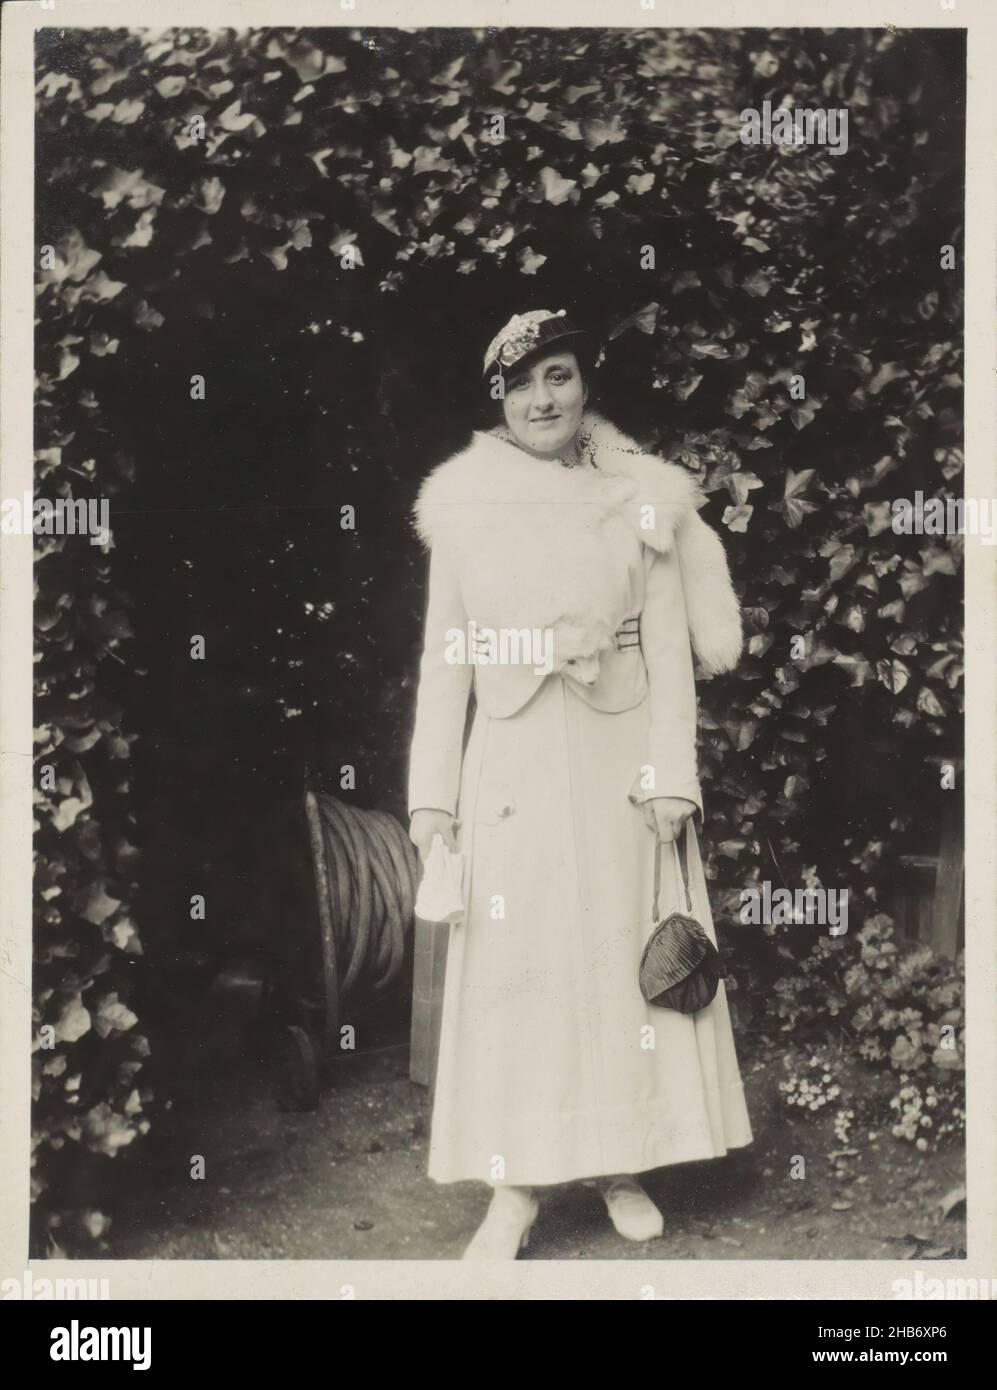 Portrait de Mme Schaerer, anonyme, Angleterre (peut-être), c.1900 - c.1920, support photographique, impression en gélatine argentée, hauteur 108 mm × largeur 82 mm Banque D'Images